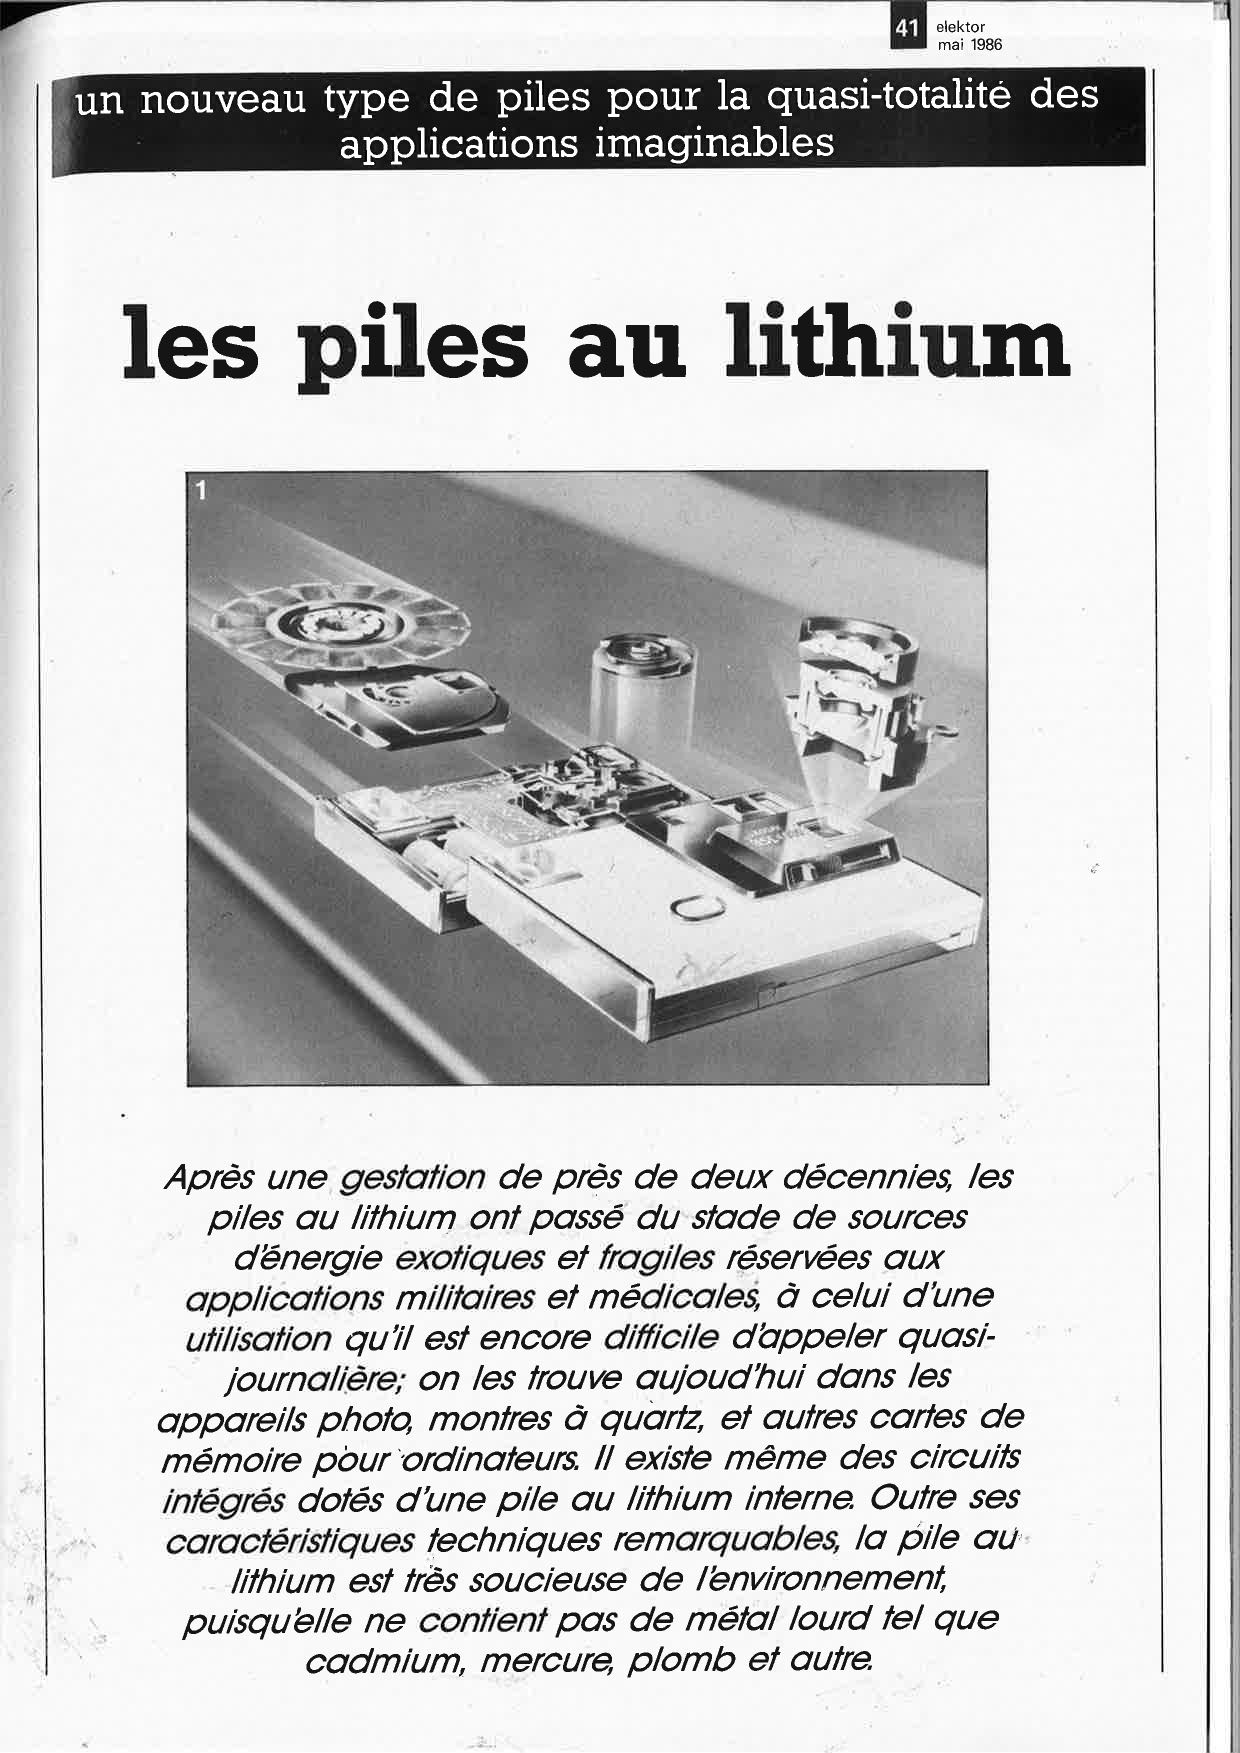 Les piles au lithium